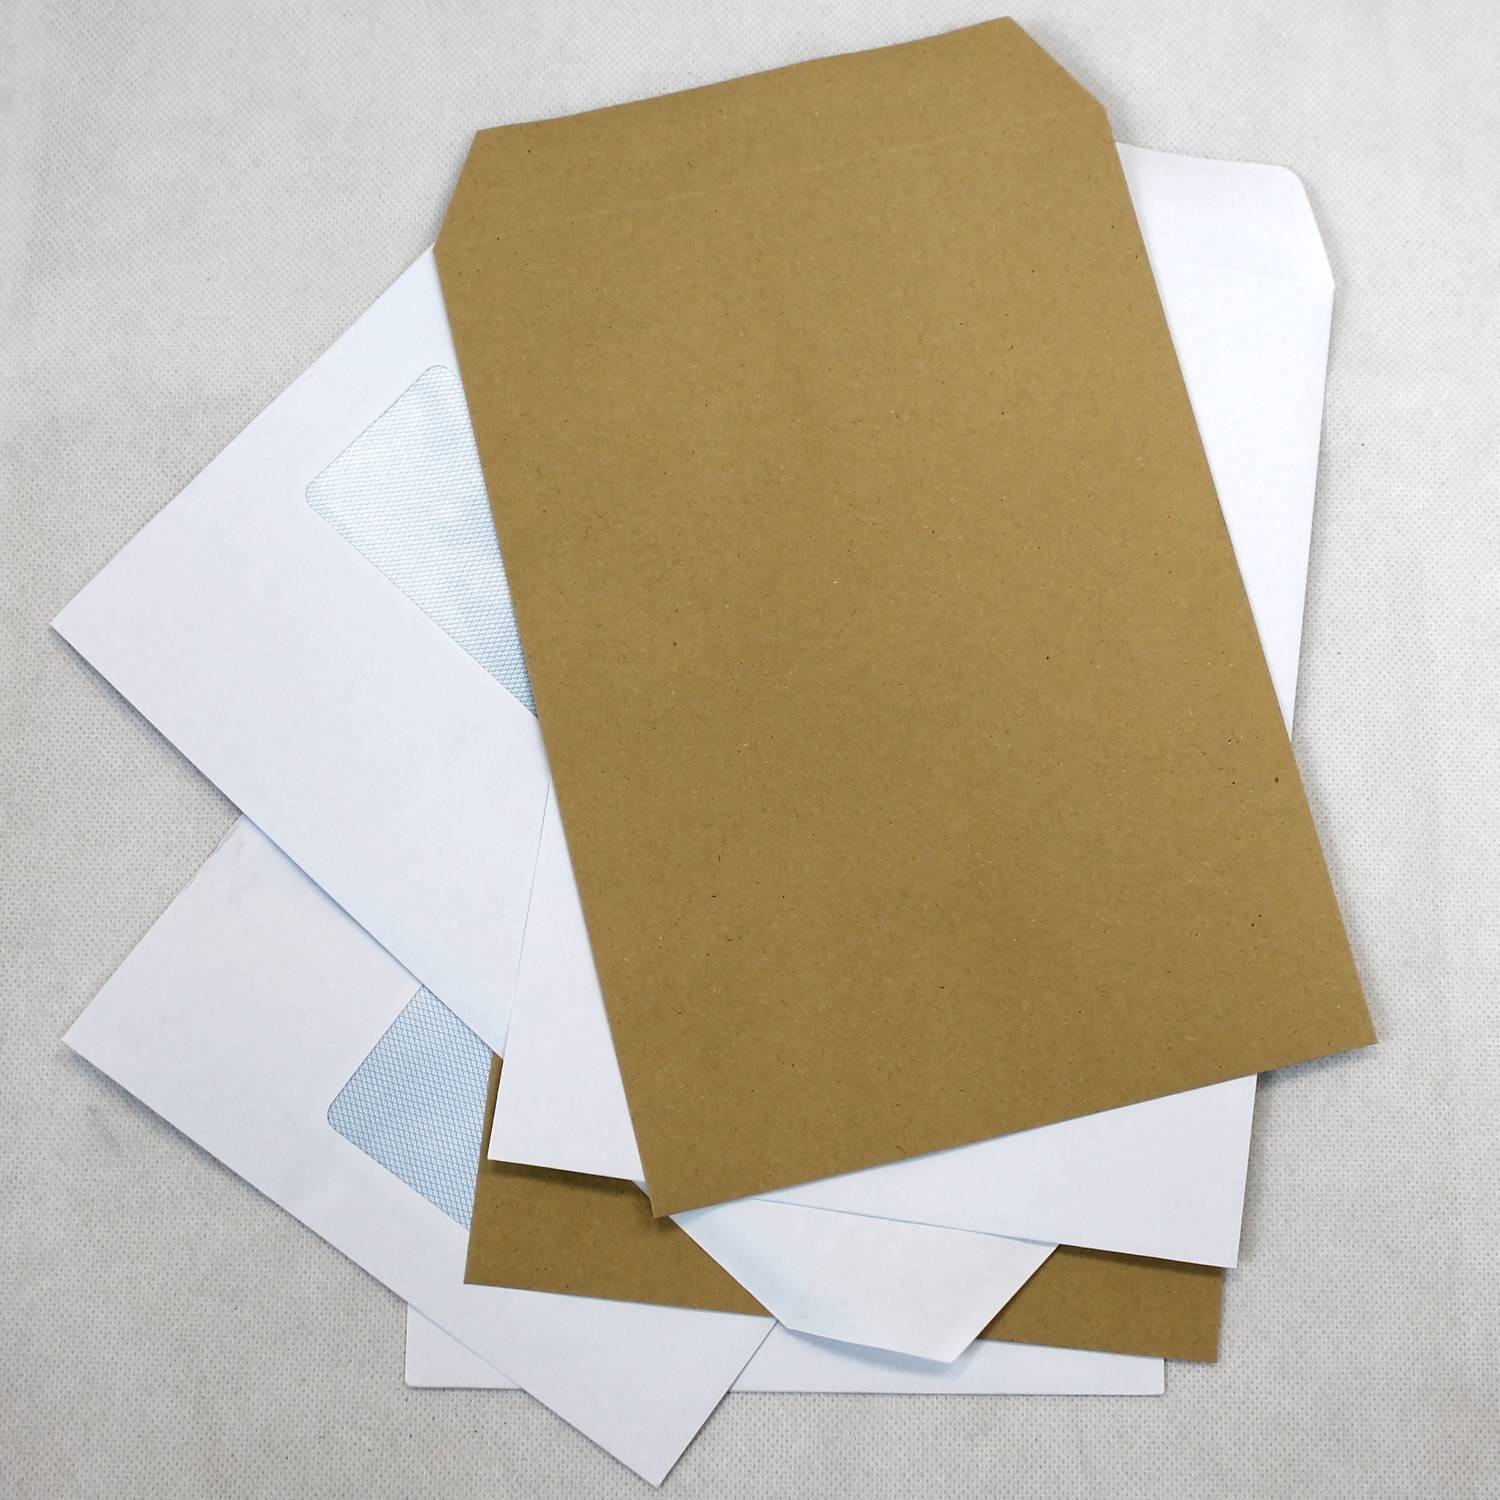 White Envelopes, Manilla Envelopes